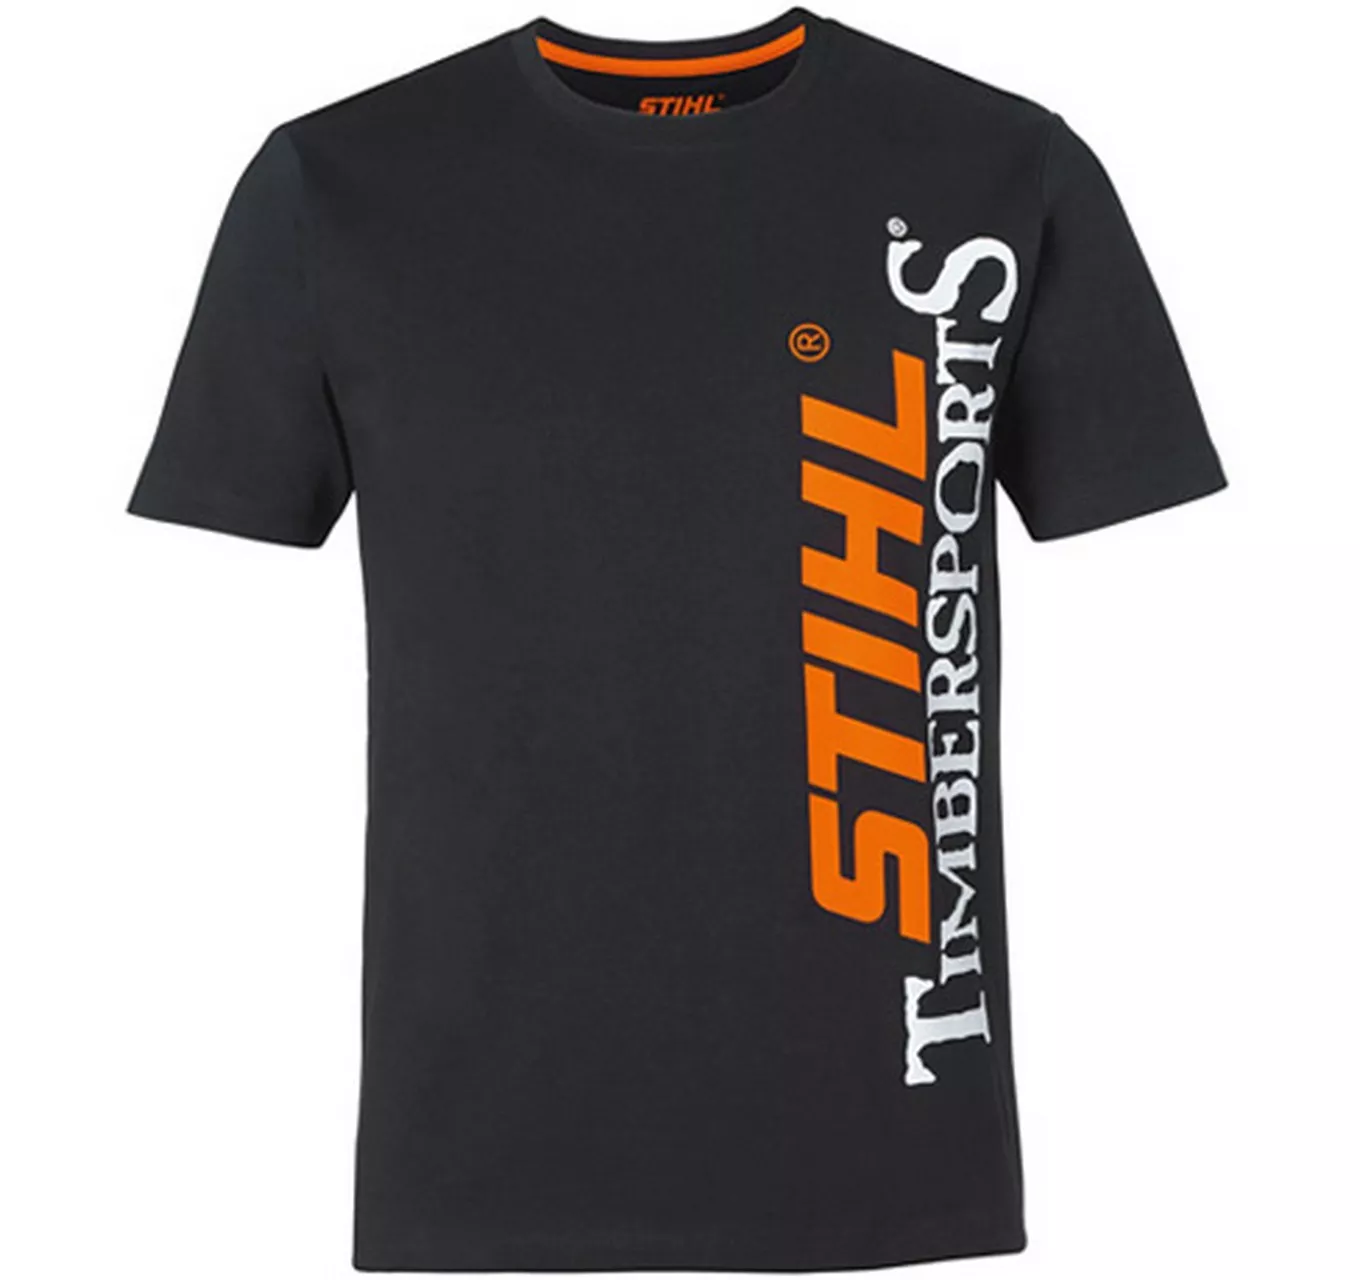 STIHL Timbersports T-Shirt L